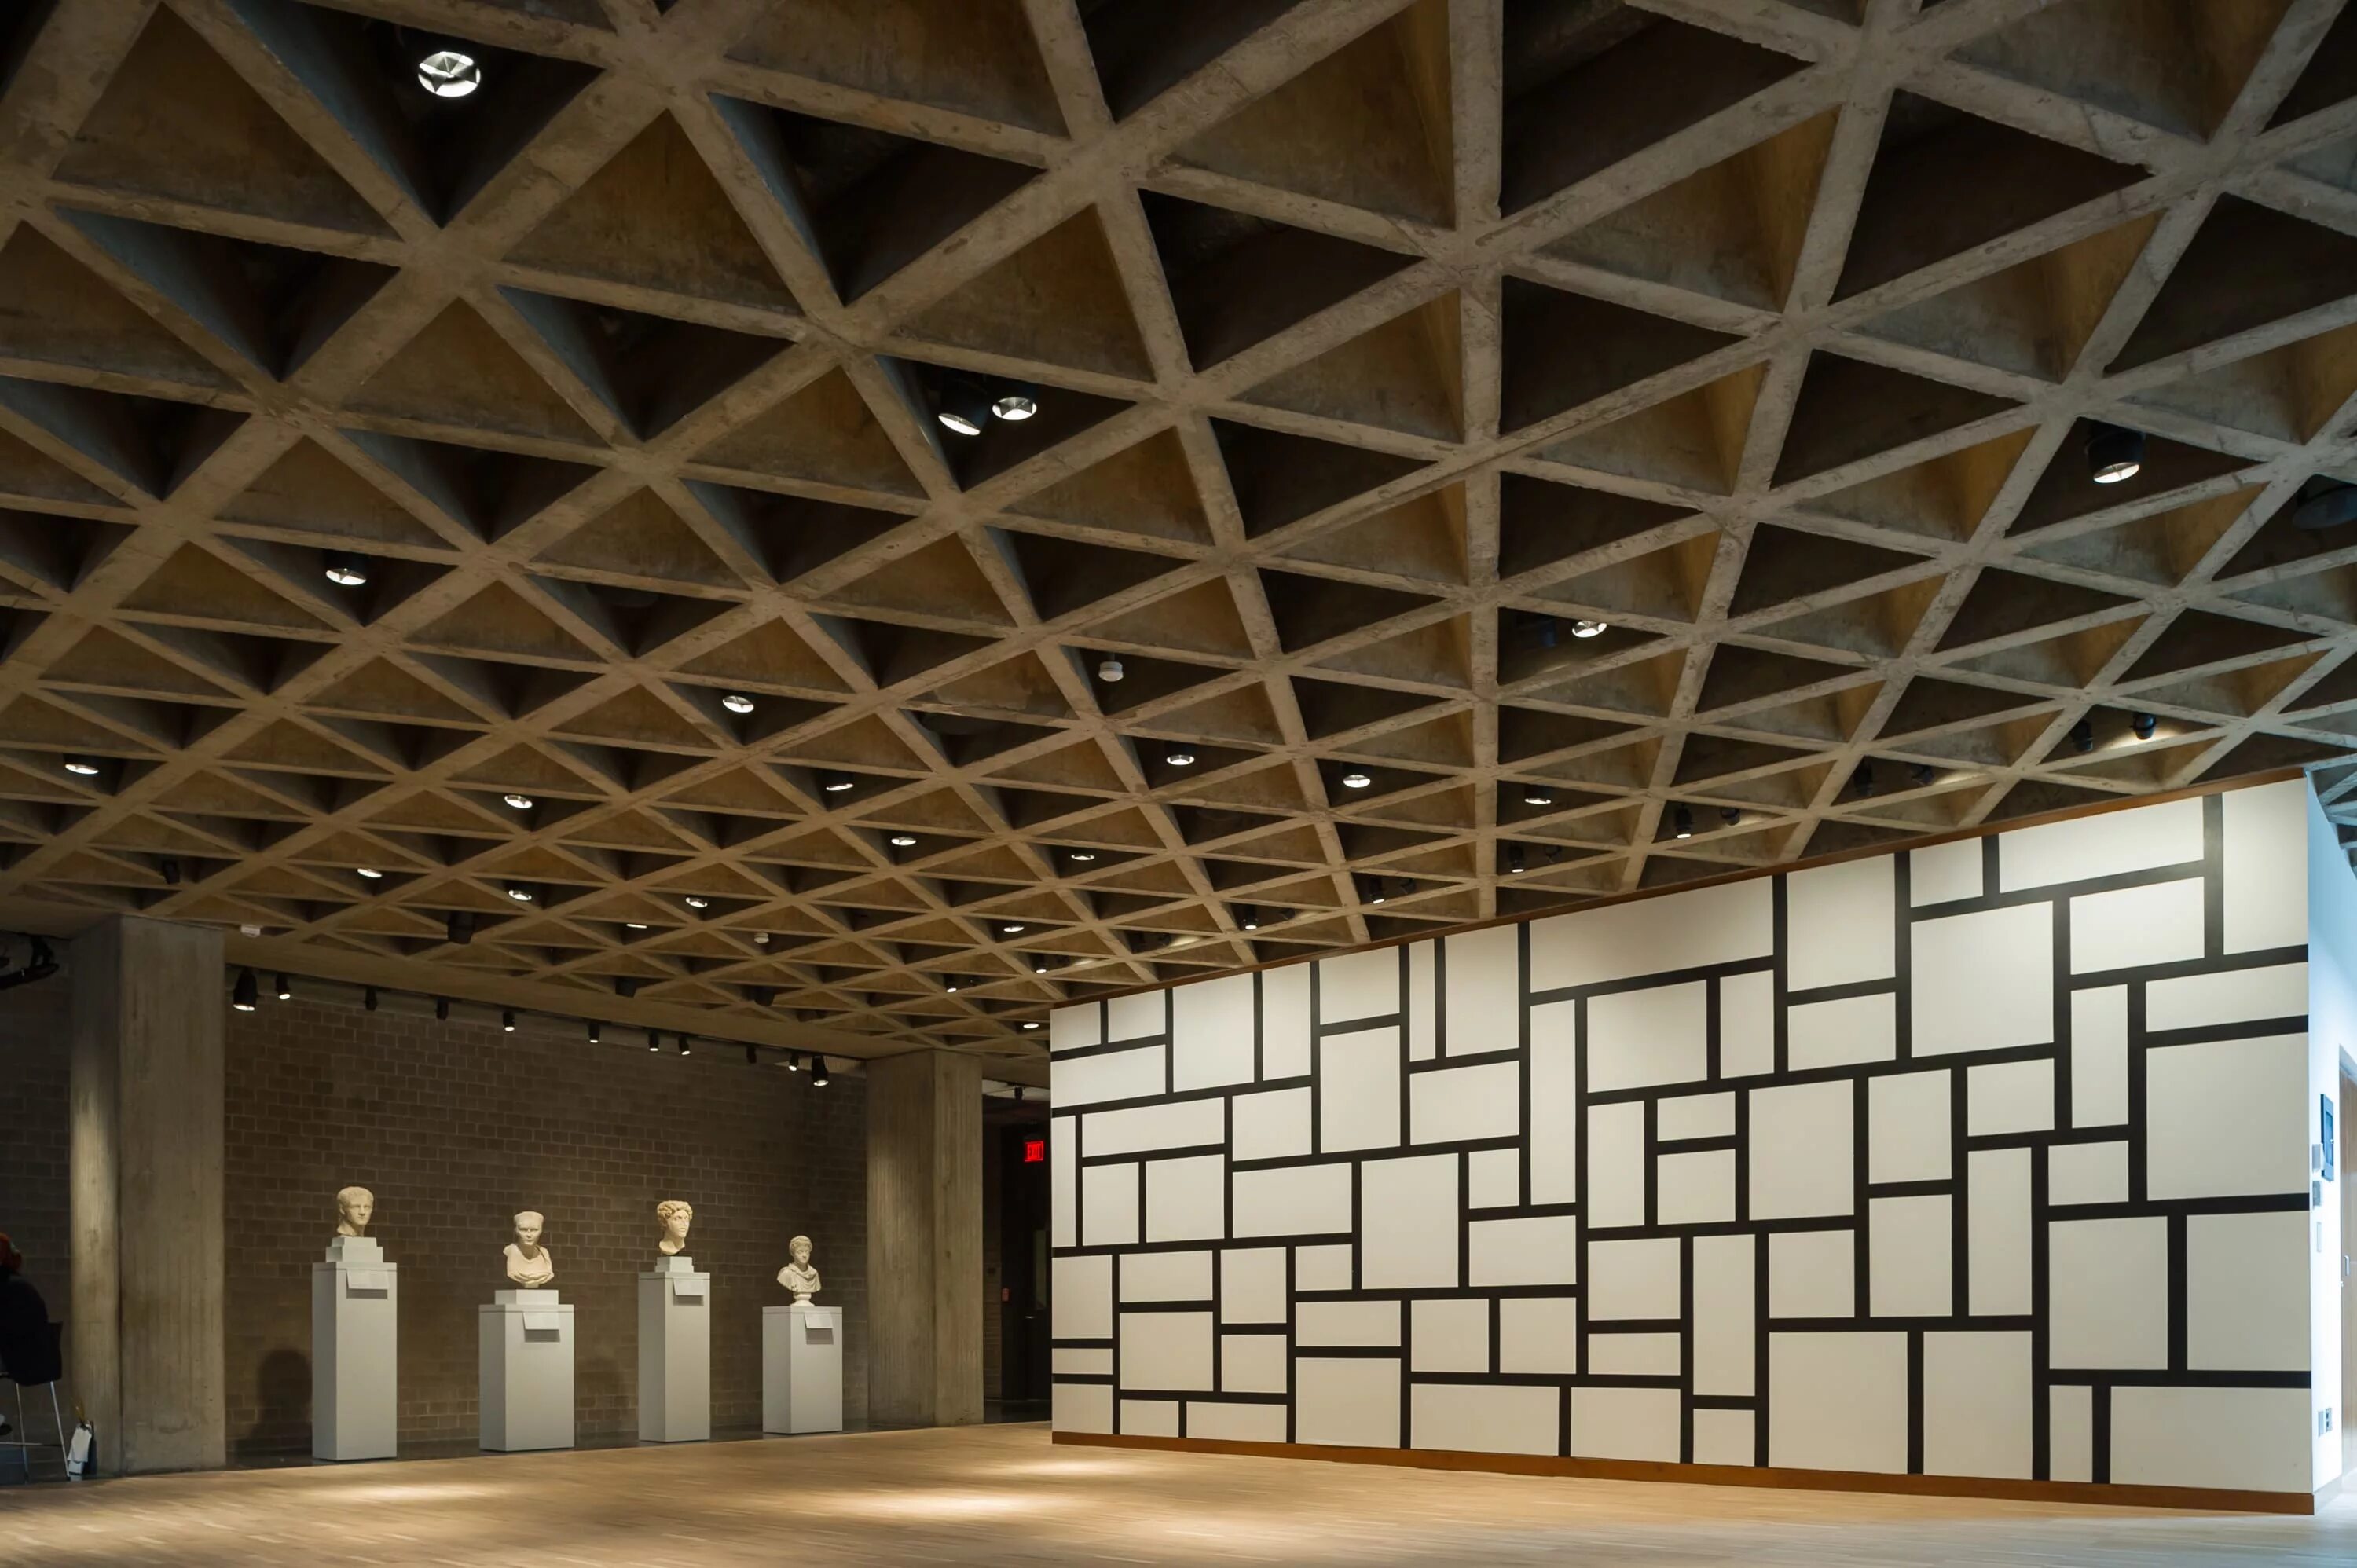 Монолитный потолок. Художественный музей Йельского университета Луис Кан. Художественная галерея Йельского университета в Нью-Хейвене Луис Кан. Луис Кан Архитектор. Кессонное монолитное перекрытие.